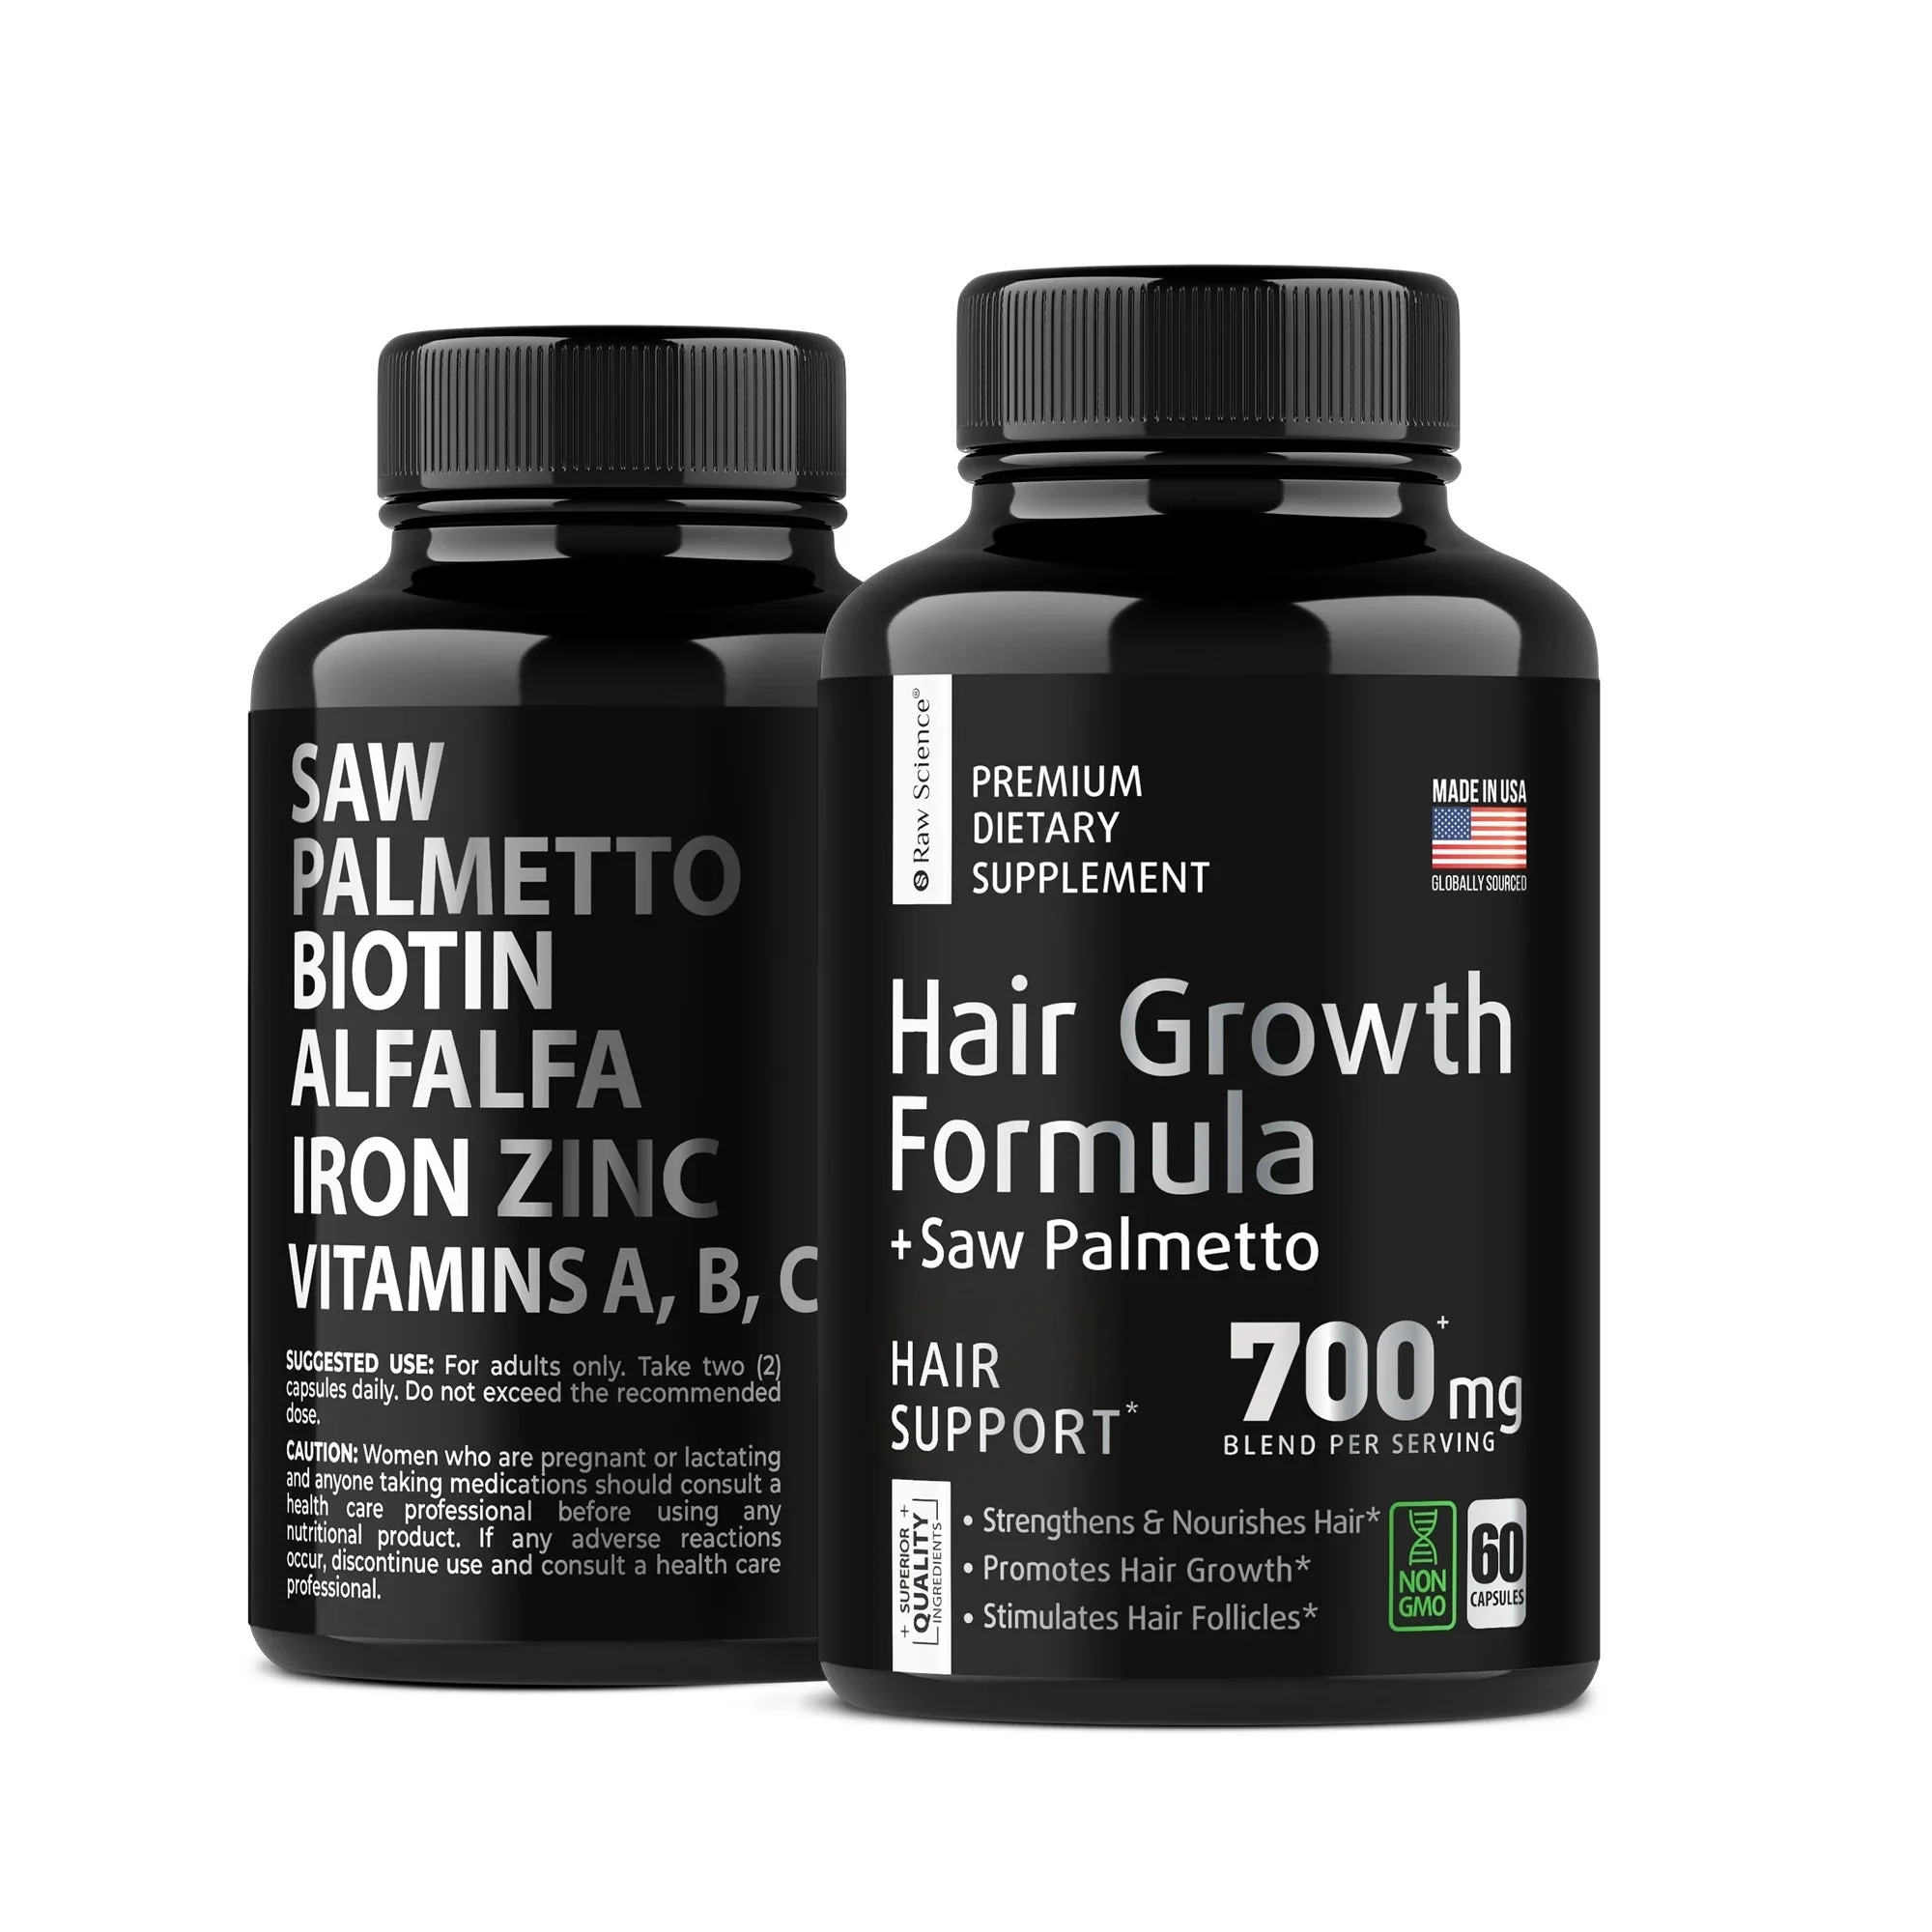 Hair Loss in Men: Can Vitamins Help Regrow Hair?插图3